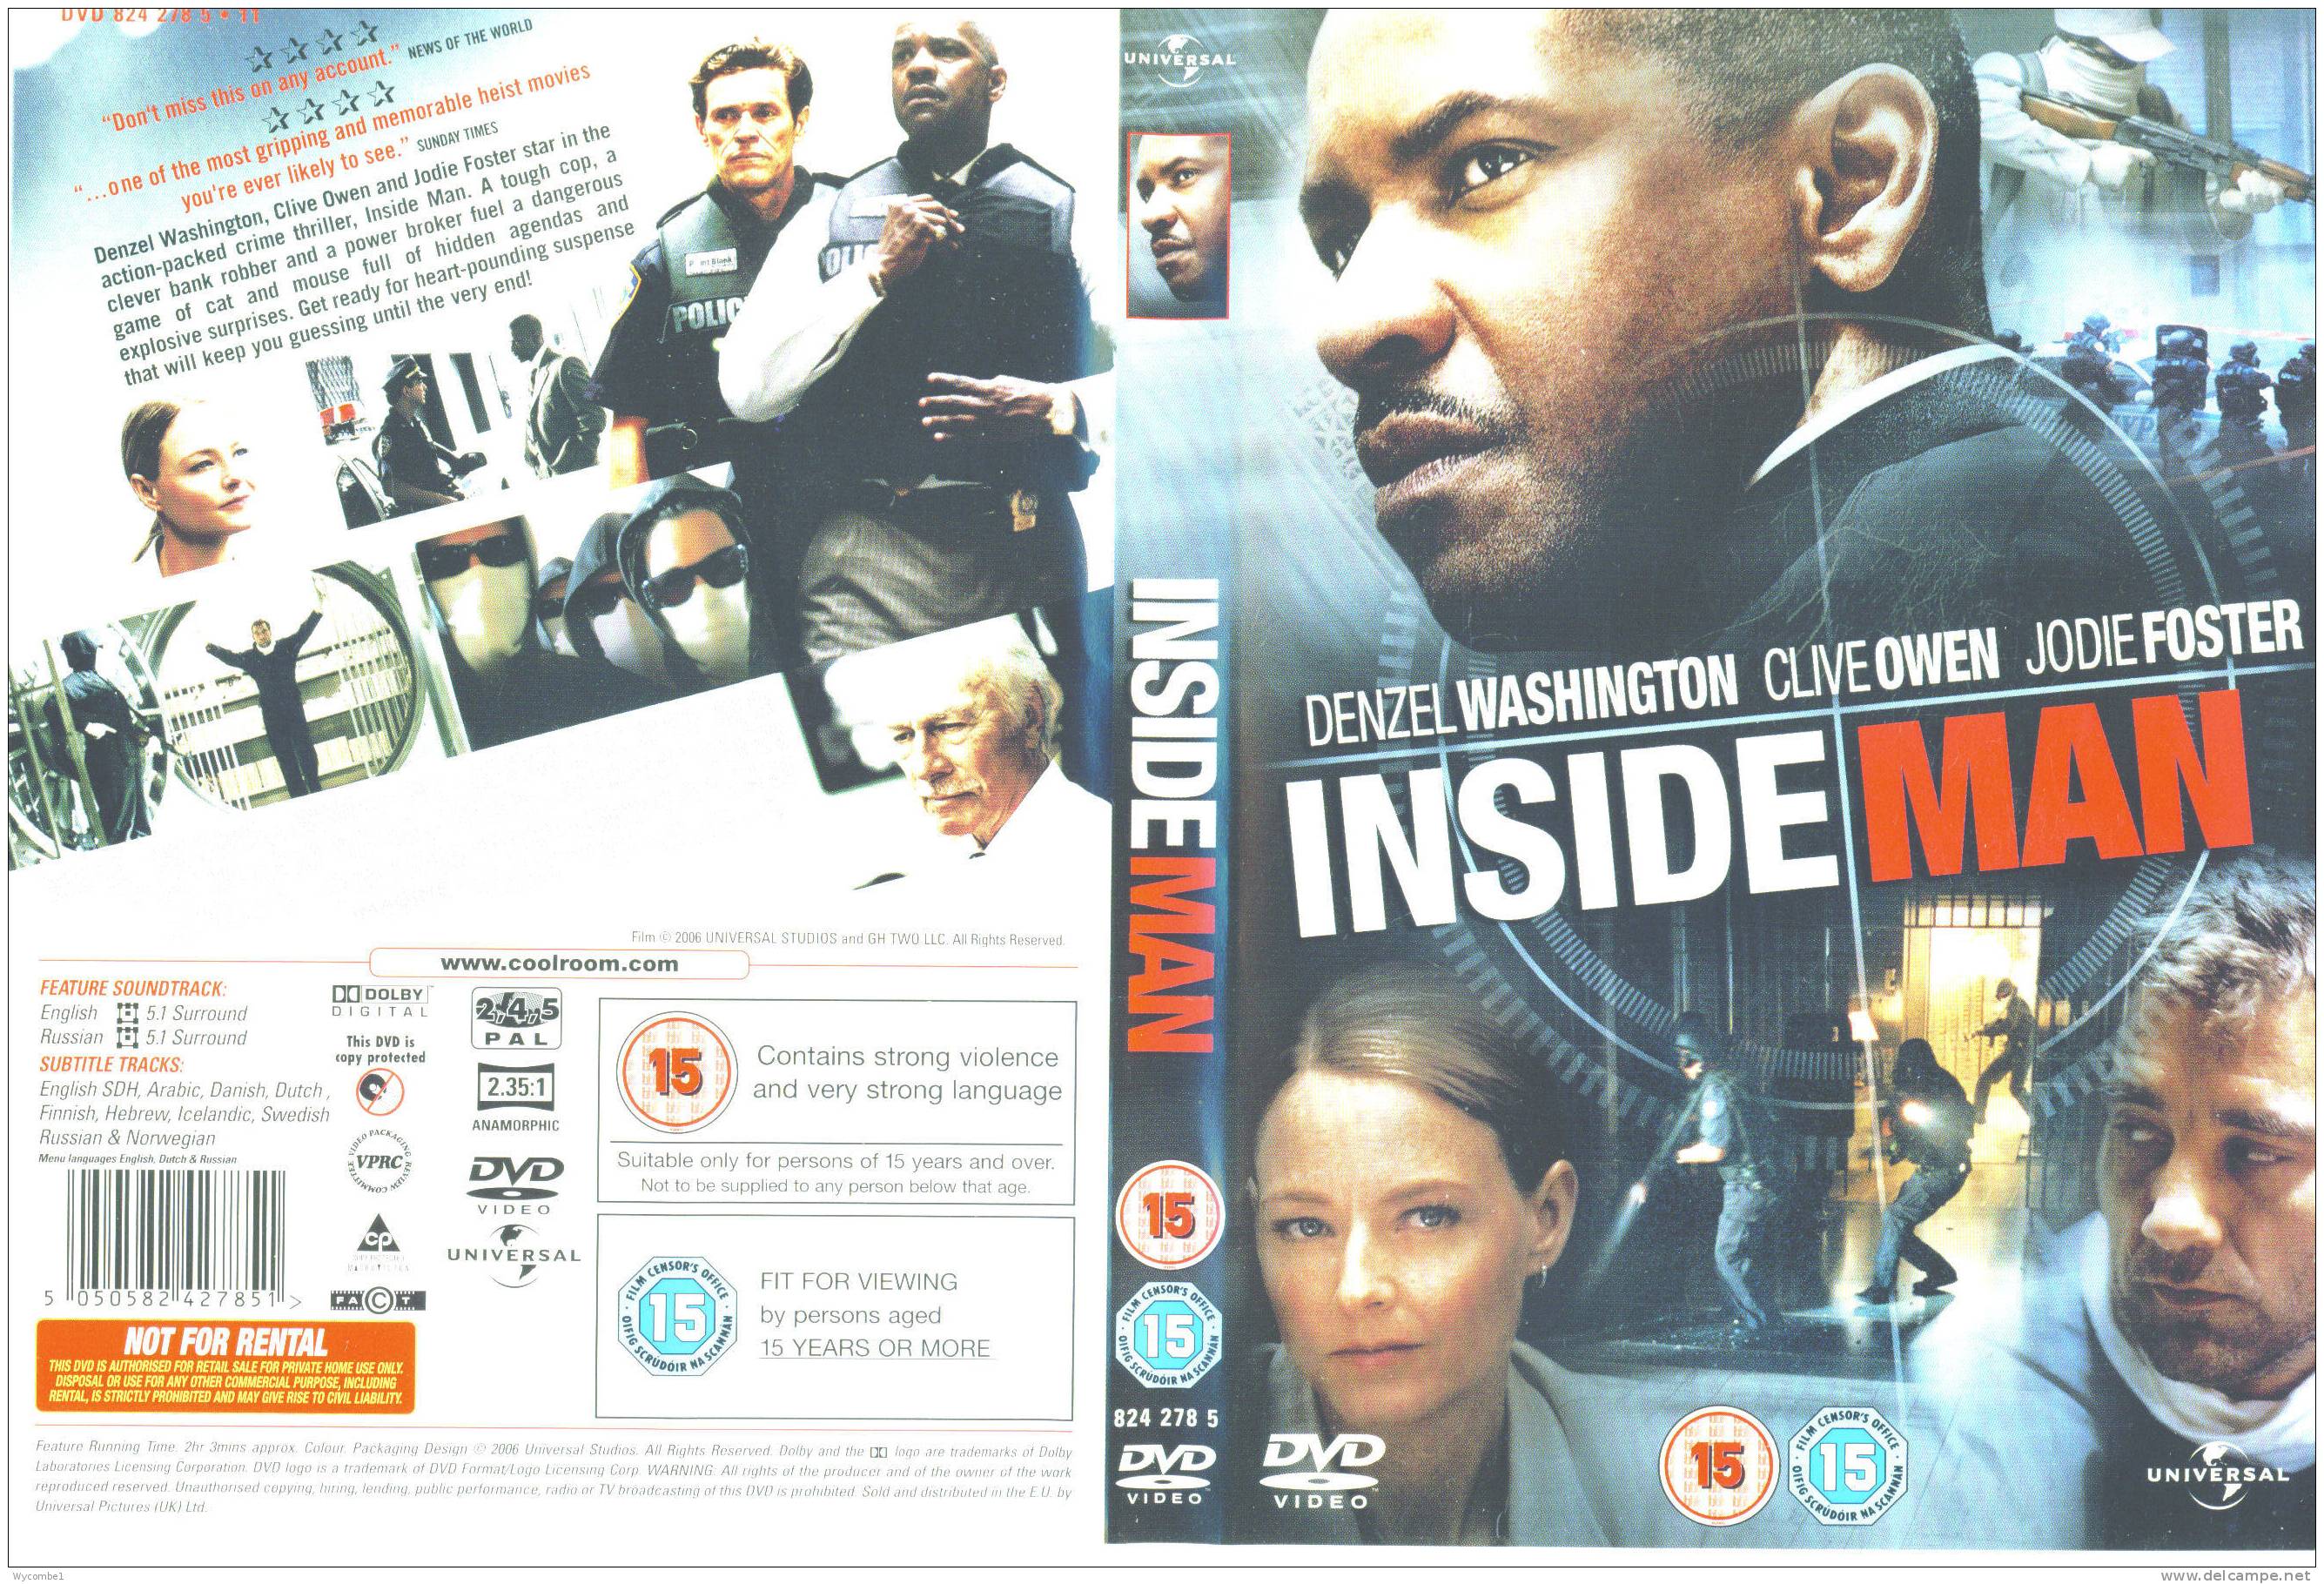 INSIDE MAN - Denzel Washington (Details As Scan) - Crime